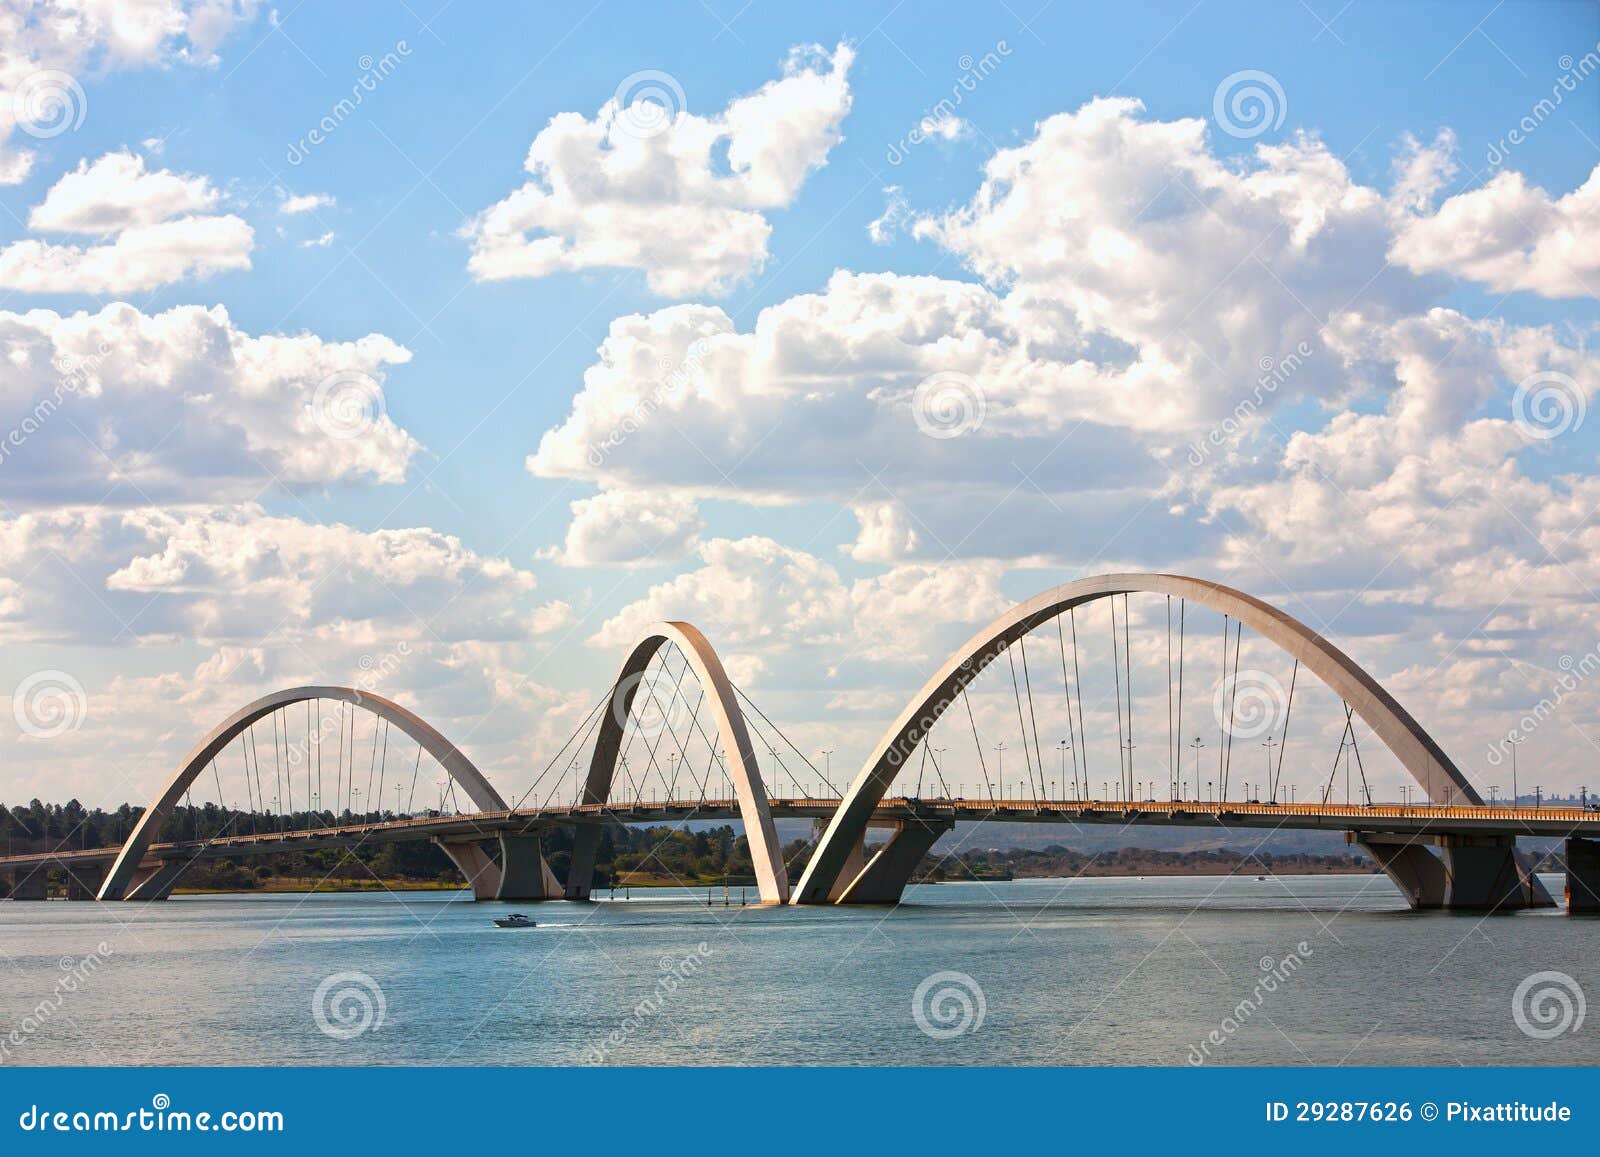 juscelino kubitschek bridge in brasilia brazil